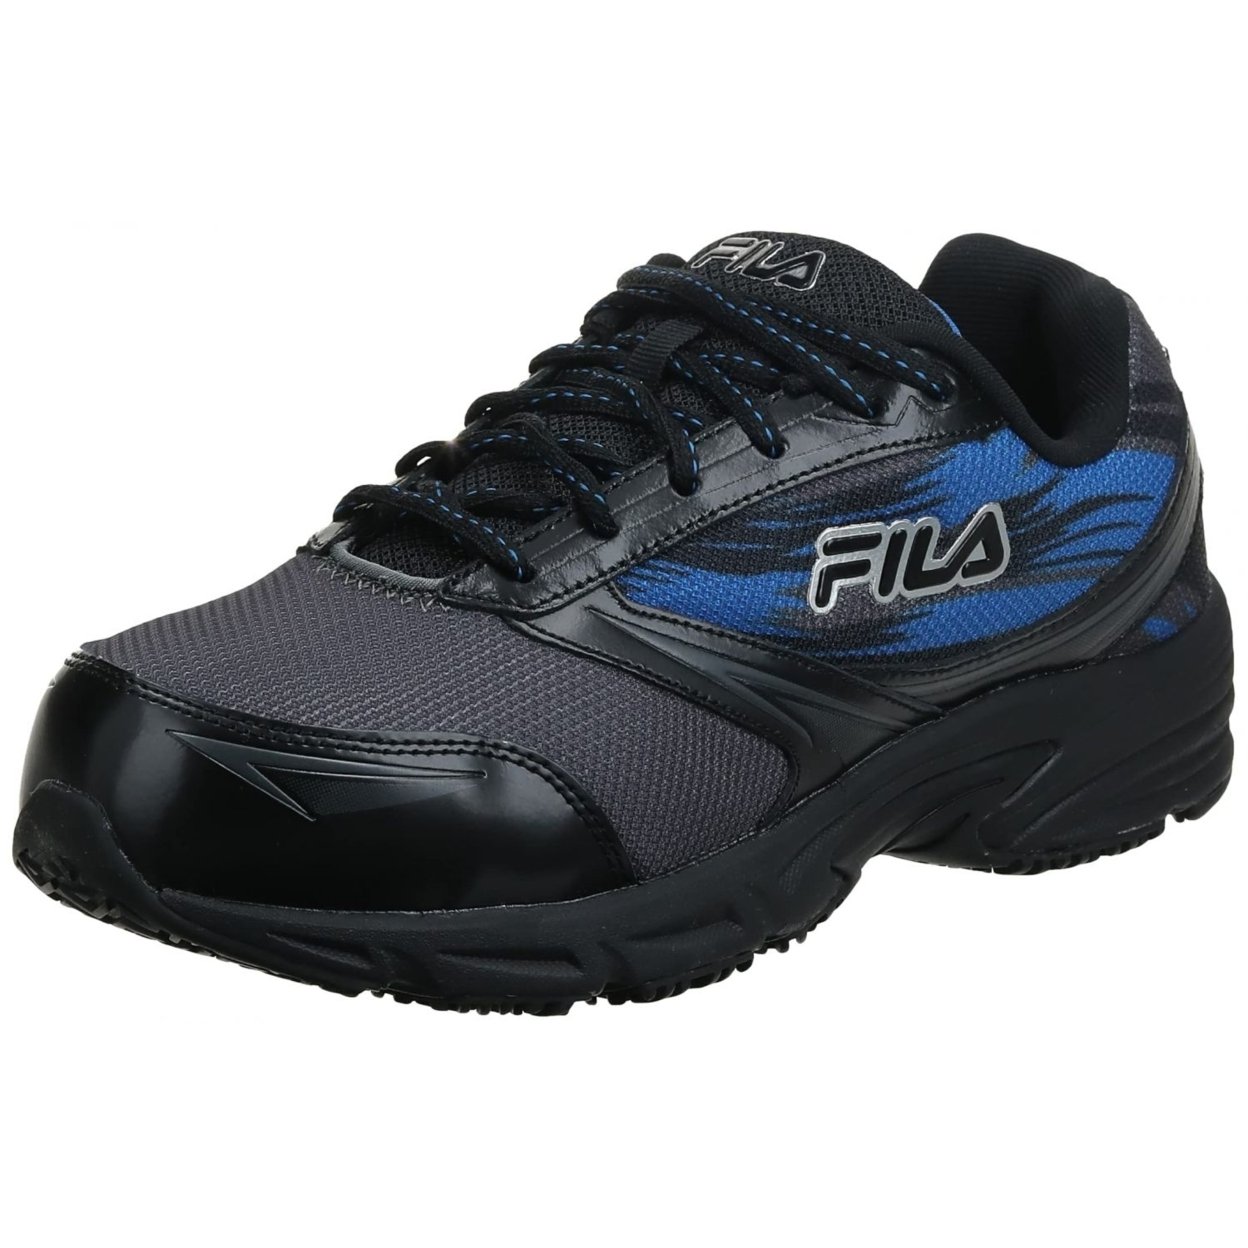 Fila Menâs Memory Meiera 2 Slip Resistant And Composite Toe Work Shoe CSRK/BLK/PRBL - Castlerock/Black/Prince Blue, 11.5